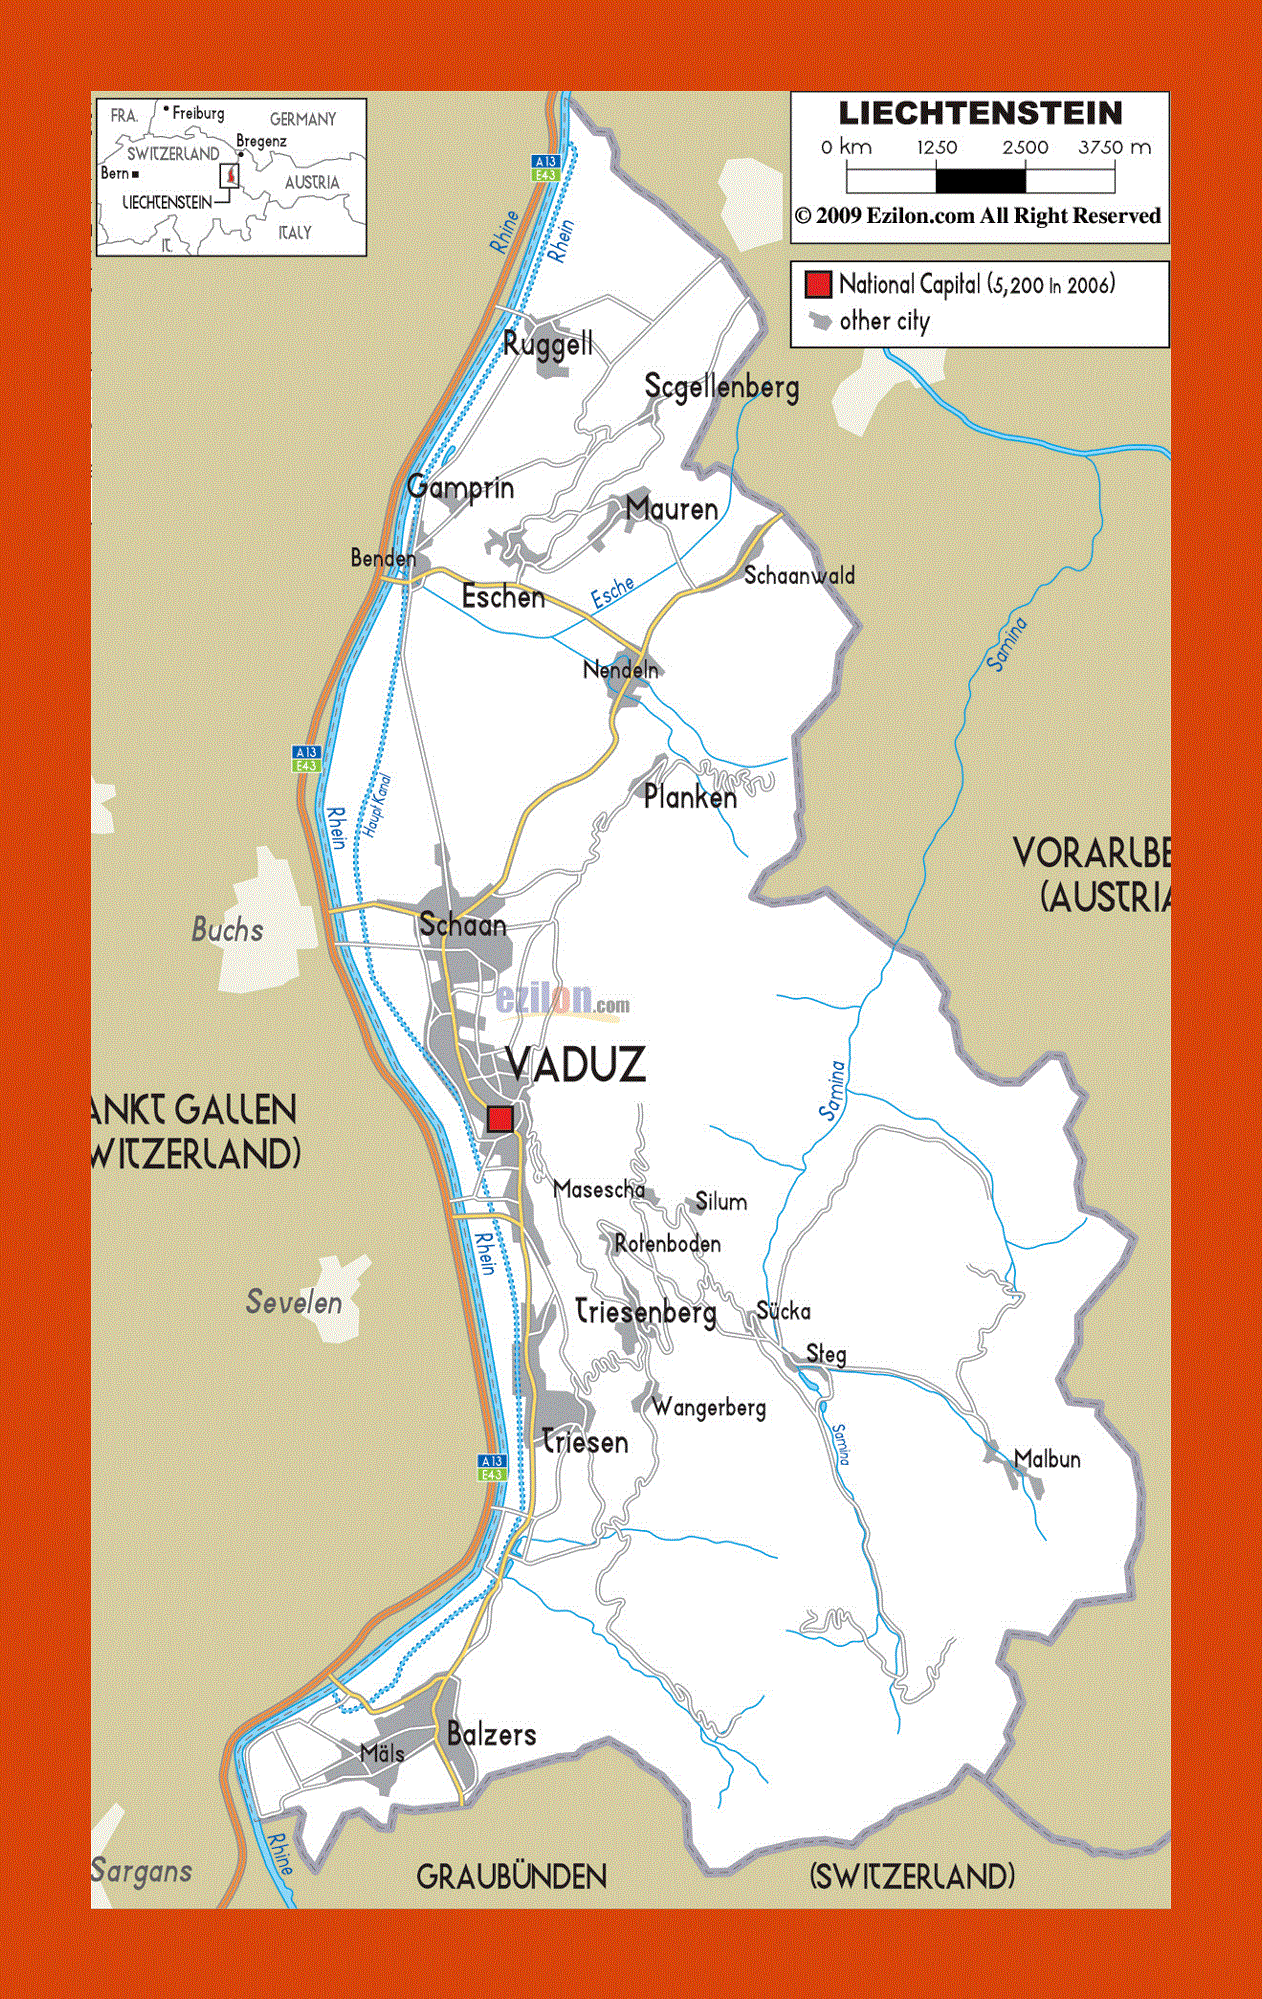 Road map of Liechtenstein